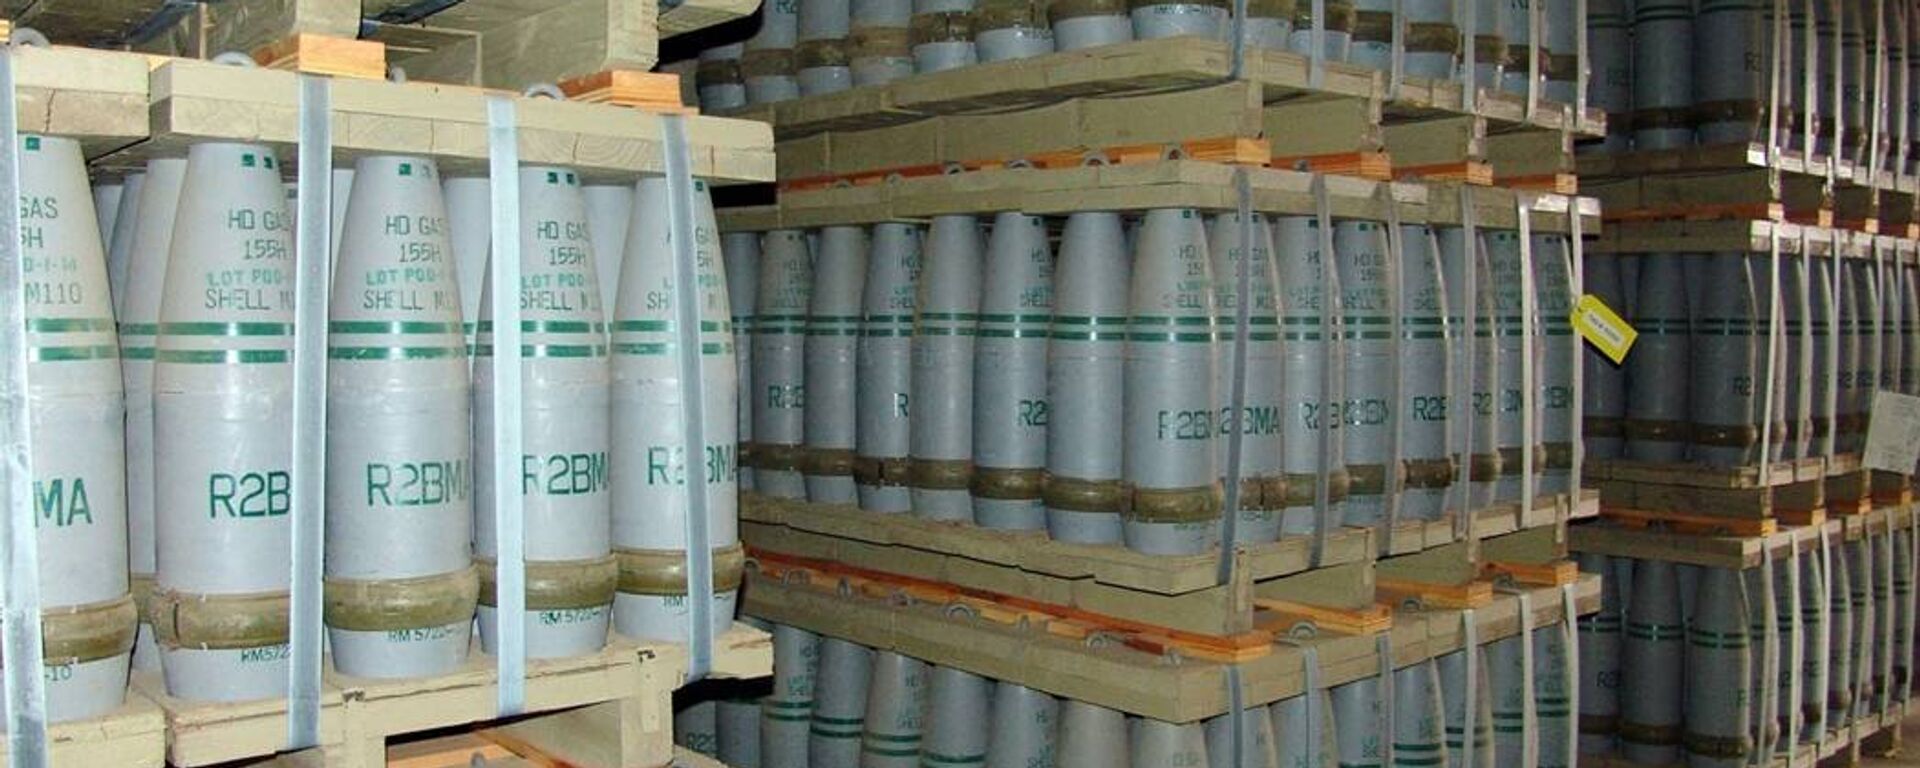 Municiones de gas mostaza, también conocidos como iperita, en el almacén de armas químicas de Pueblo, EEUU (archivo) - Sputnik Mundo, 1920, 06.10.2021